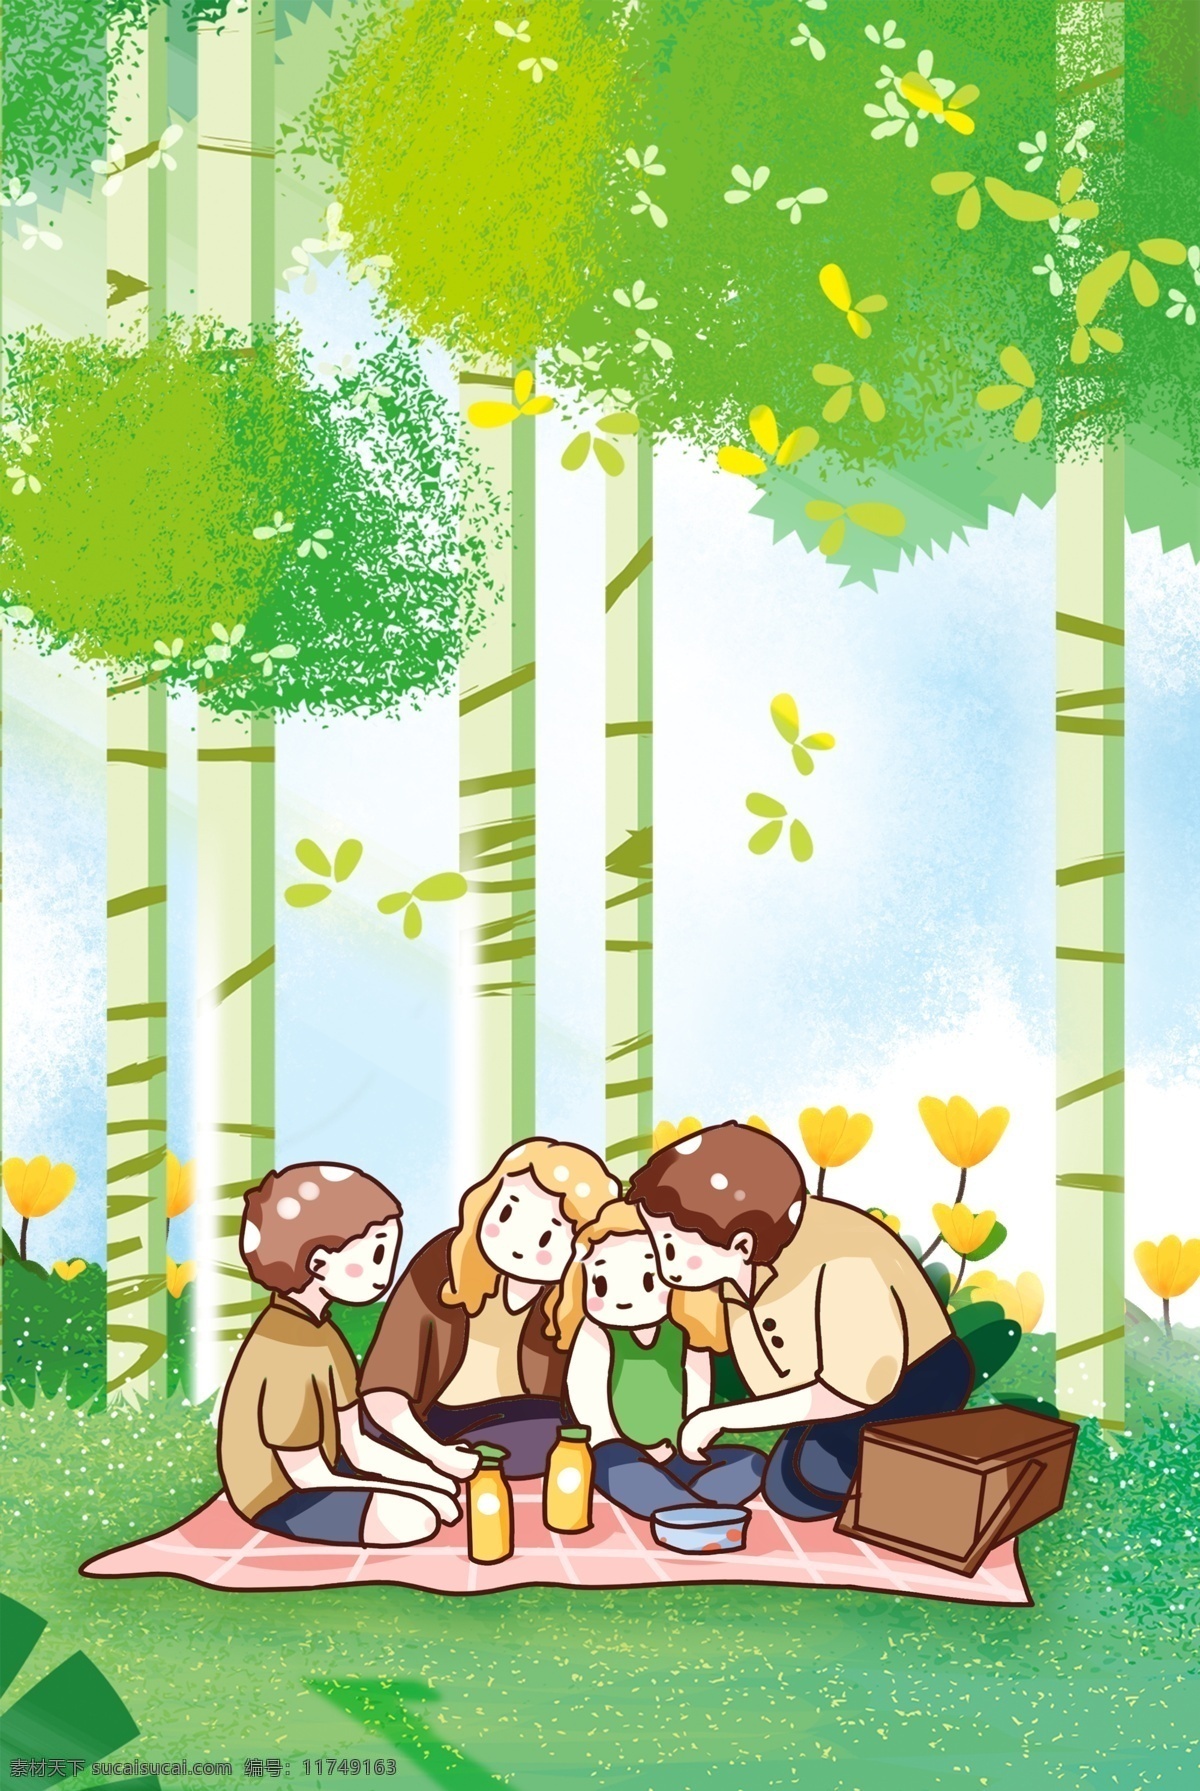 春天 郊外 海报 背景 绿色 森林 花草树木 野餐 家庭 家人 蓝天 草坪 生机勃勃 开心 温馨 快乐 活力